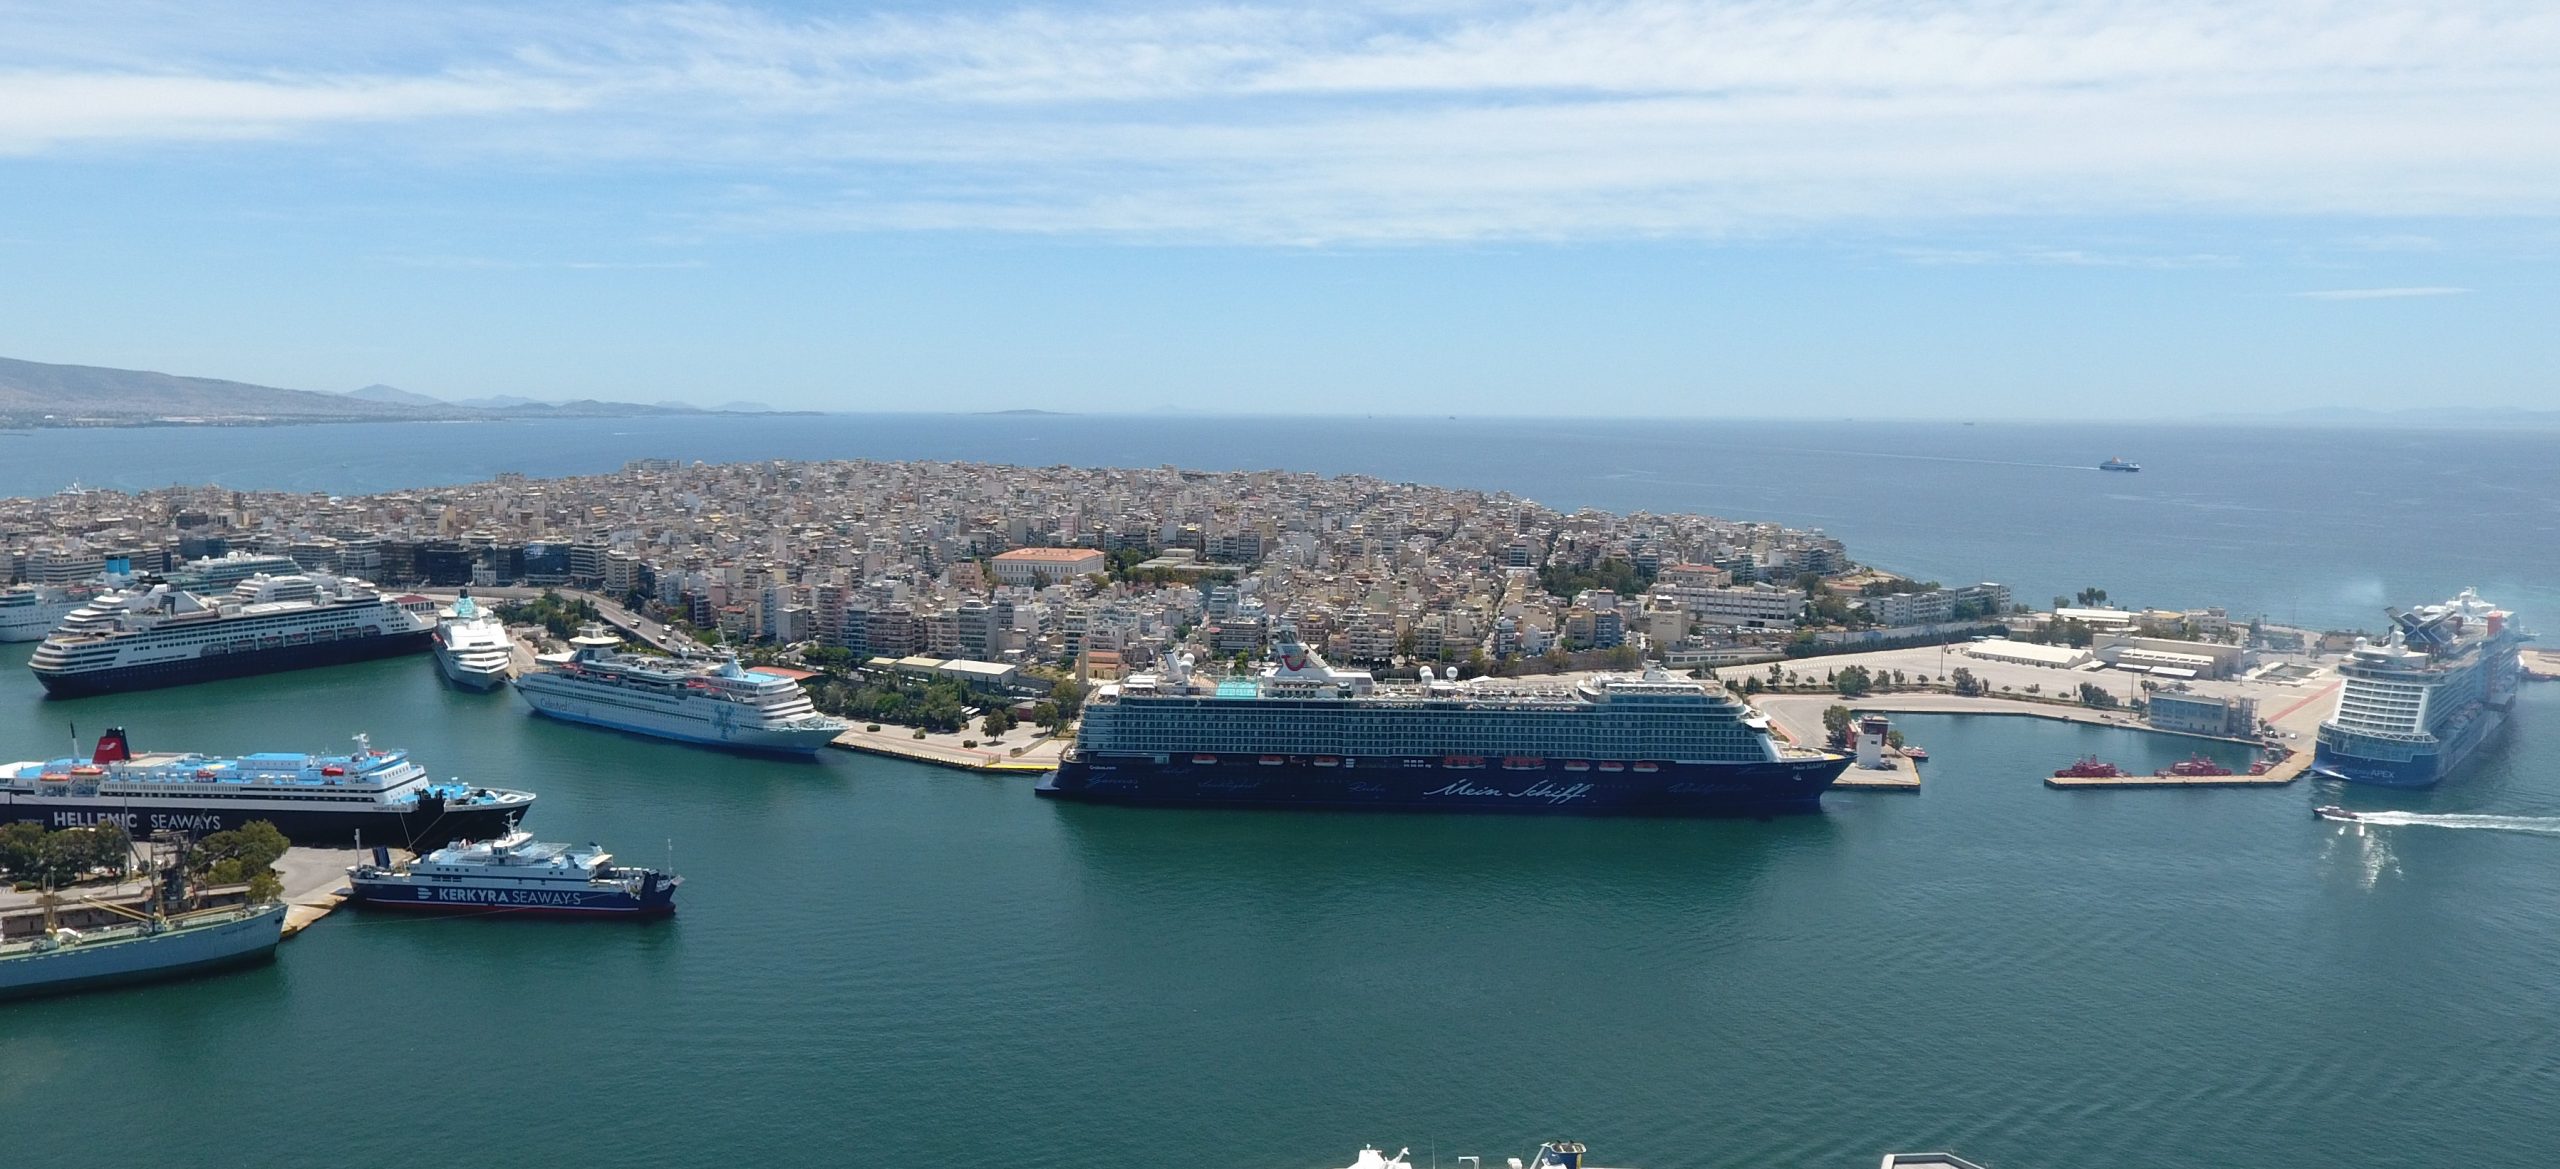 ΟΛΠ: Το λιμάνι του Πειραιά υποδέχτηκε το πρώτο κρουαζιερόπλοιο της σεζόν